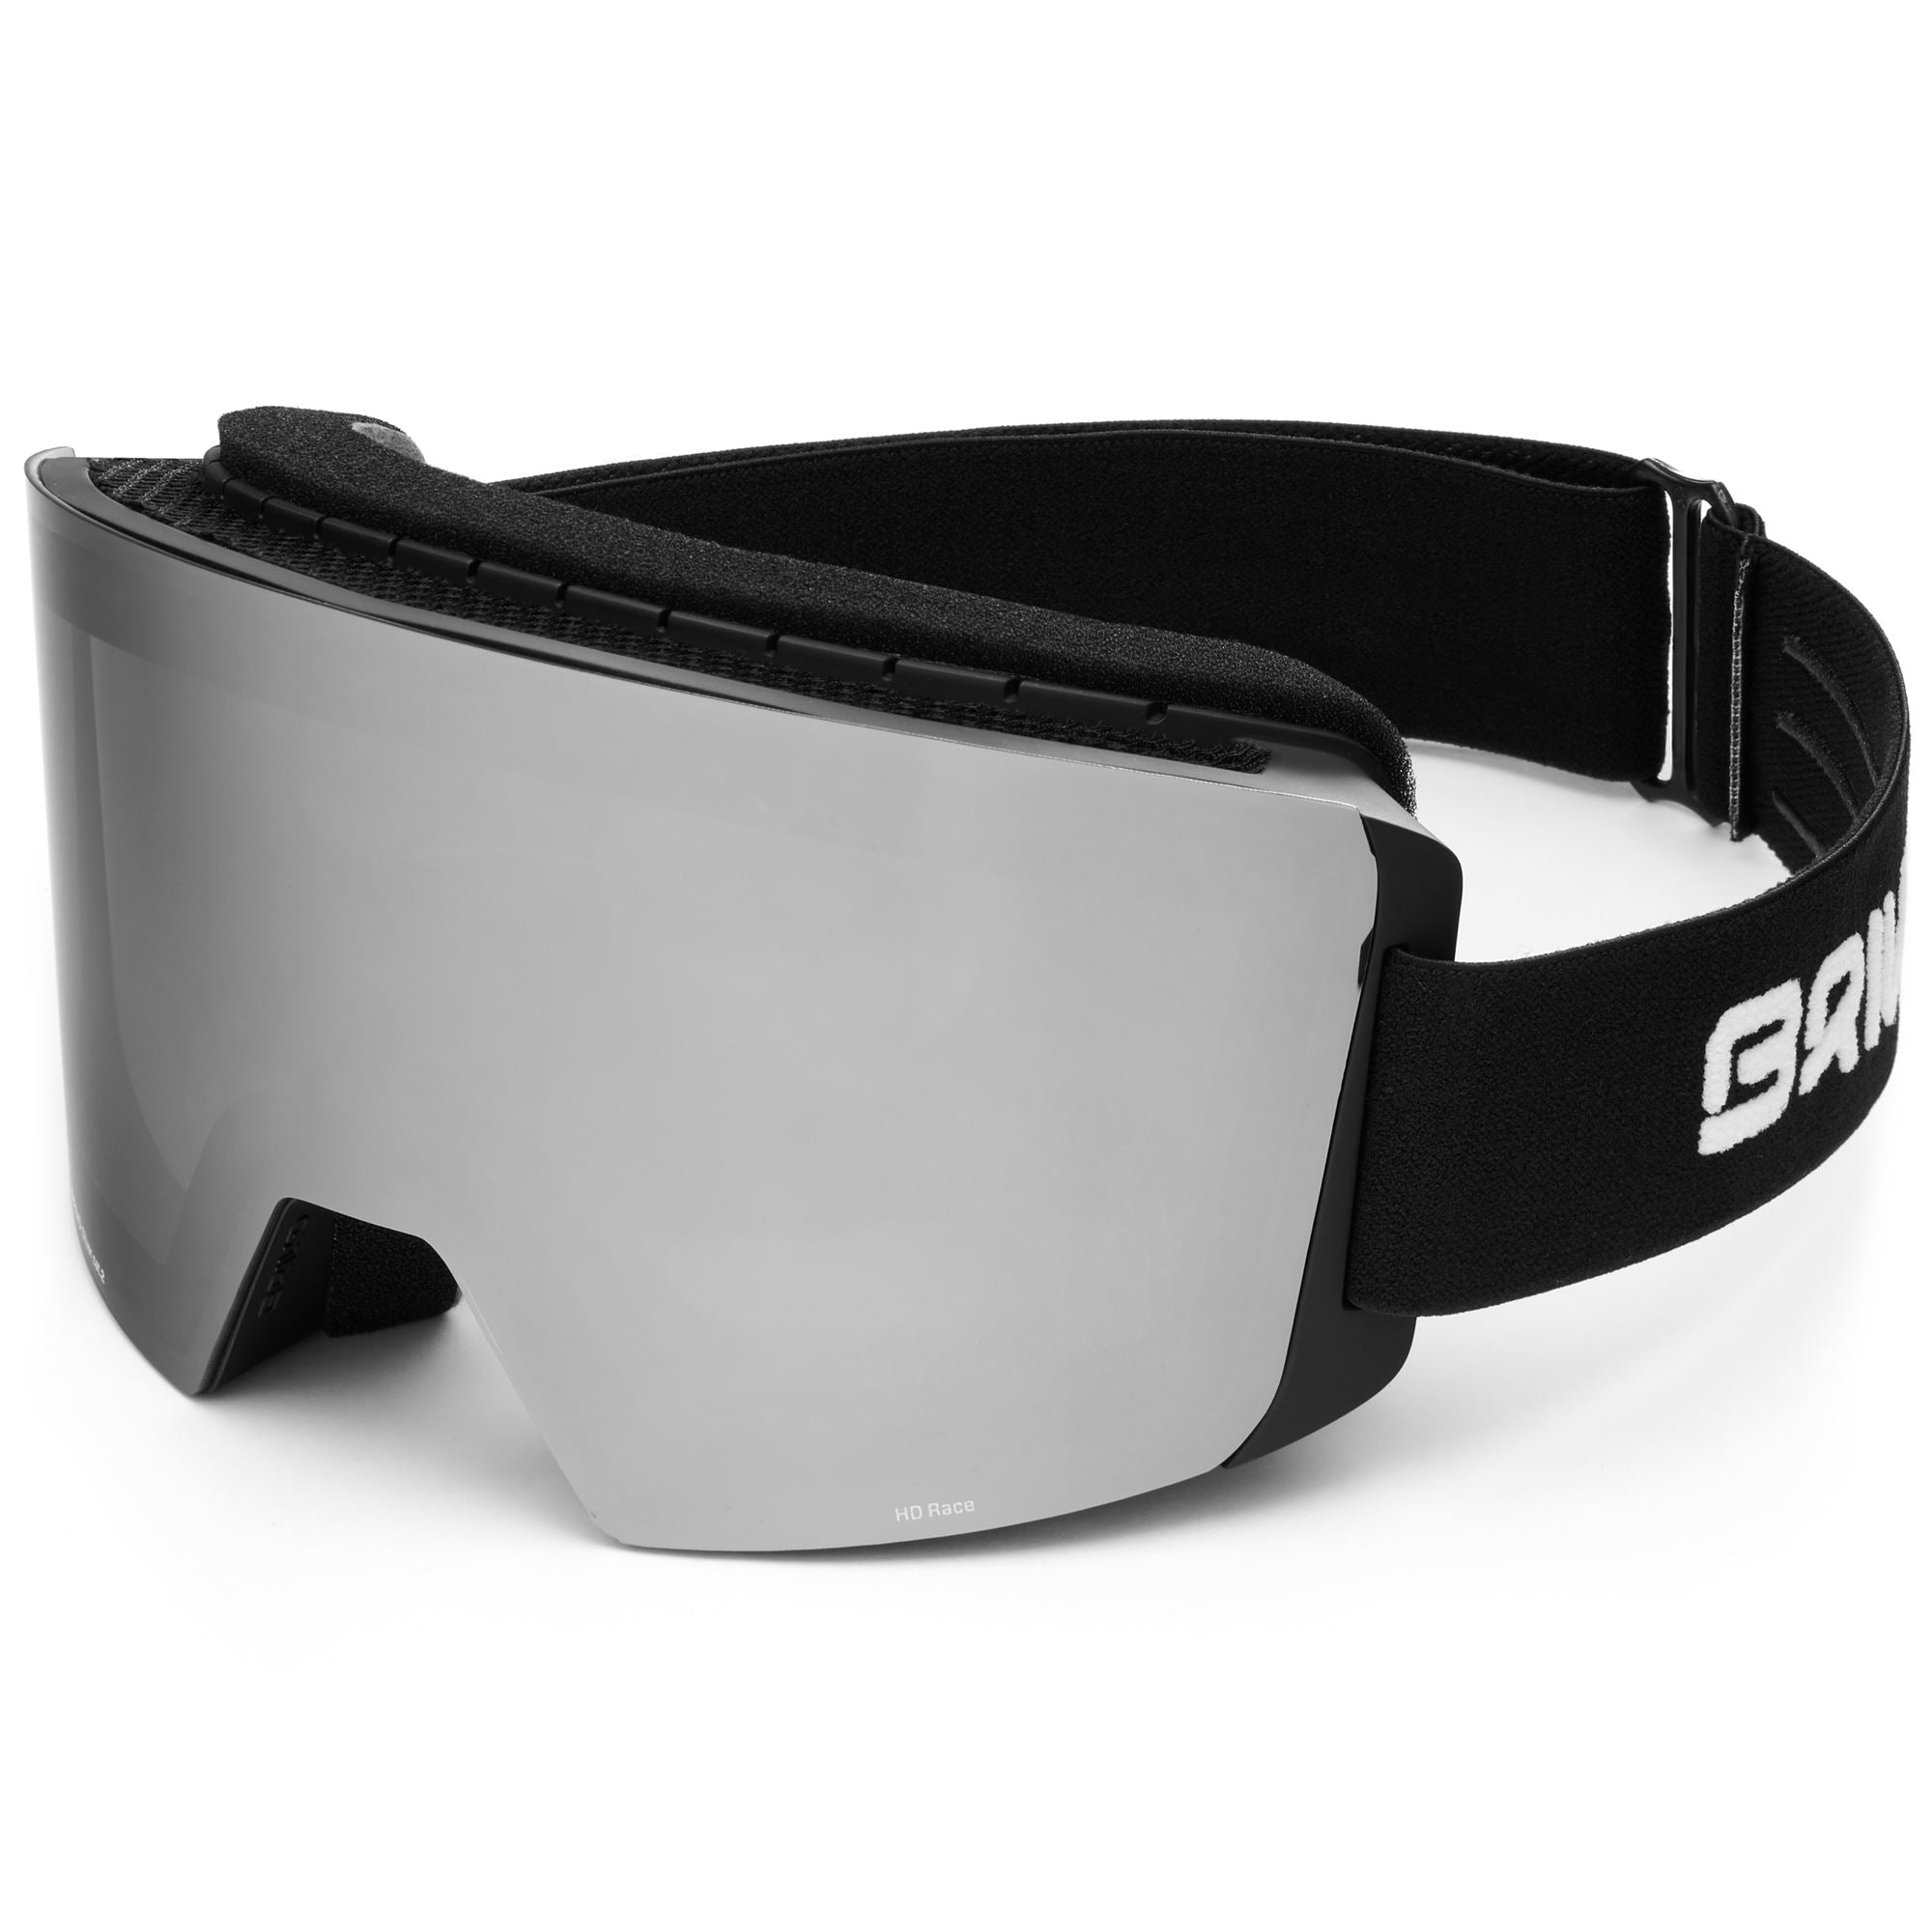 GARA FIS 8.8 - Goggles - Ski Goggles - Unisex - MATT BLACK-BBSM2